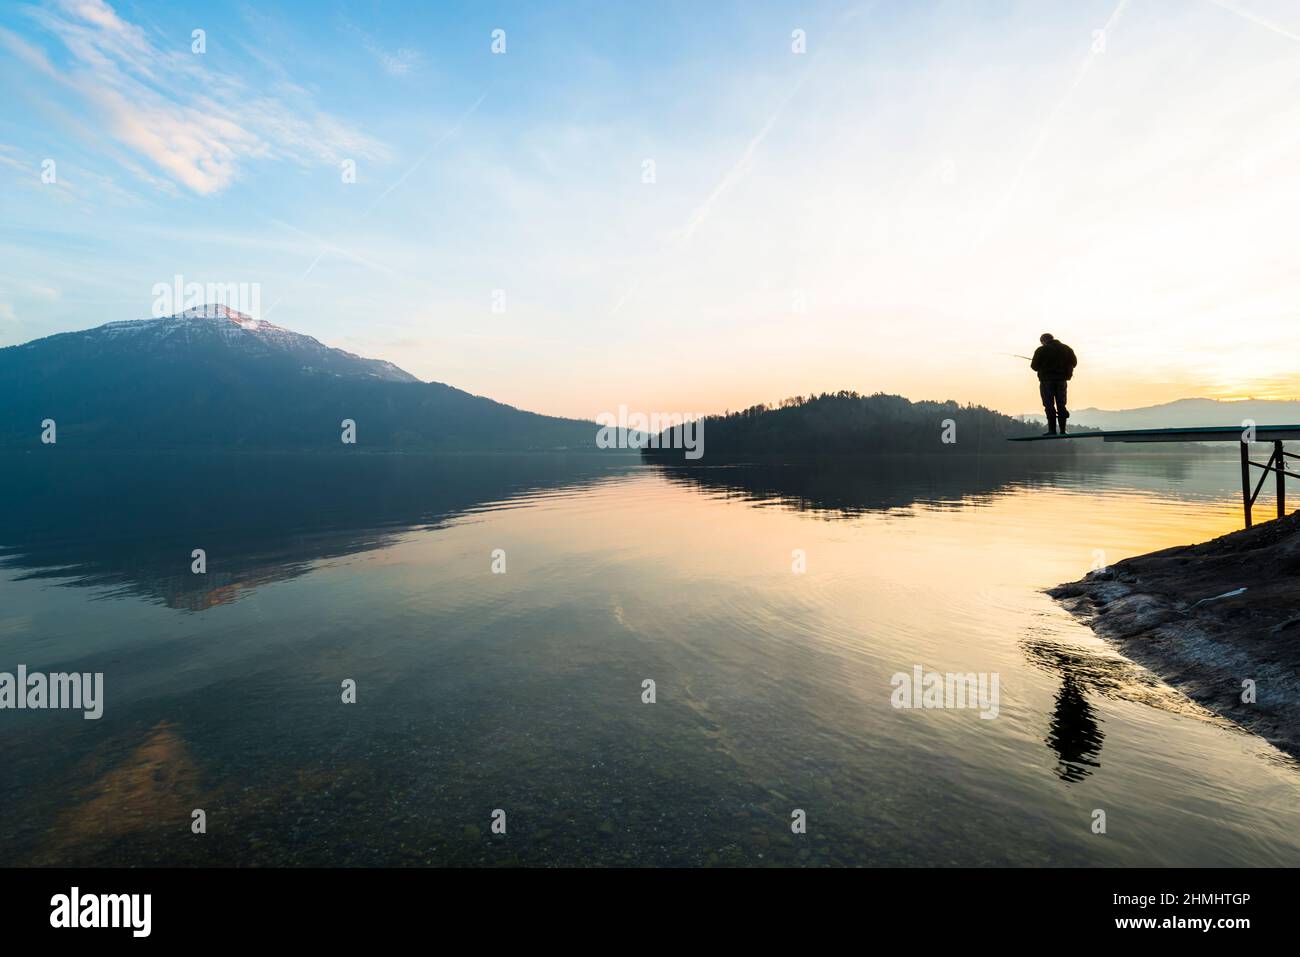 Ein Mann fängt einen Fisch. Fröhliche entspannte Stunden allein mit der Natur. Landschaft eines Bergsees. Abendlicht der untergehenden Sonne. Männliche Silhouette mit einer Fi Stockfoto